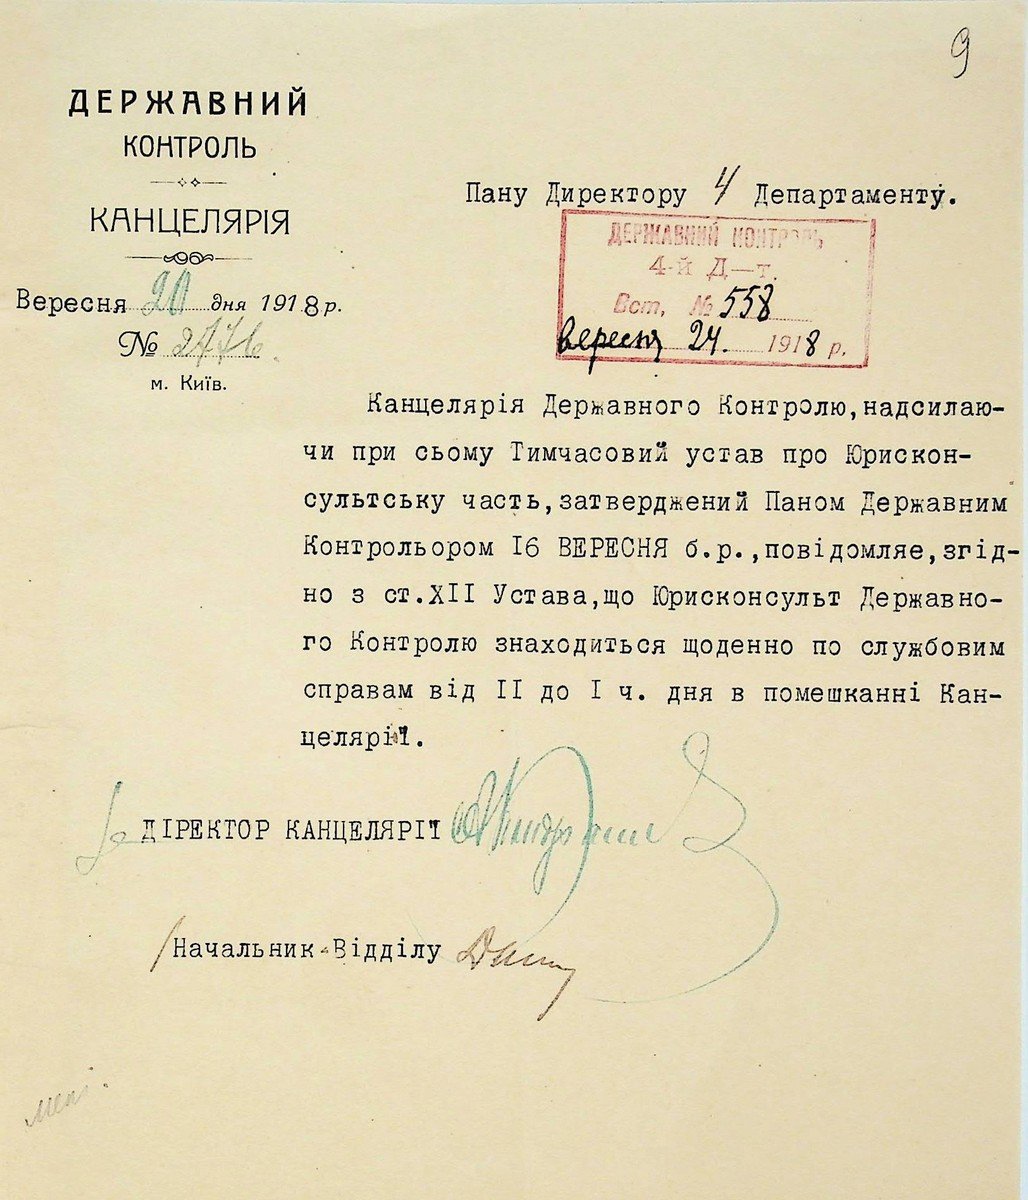 Положення про юрисконсульську частину Державного контролю із супровідним листом. 20 вересня 1918 р.